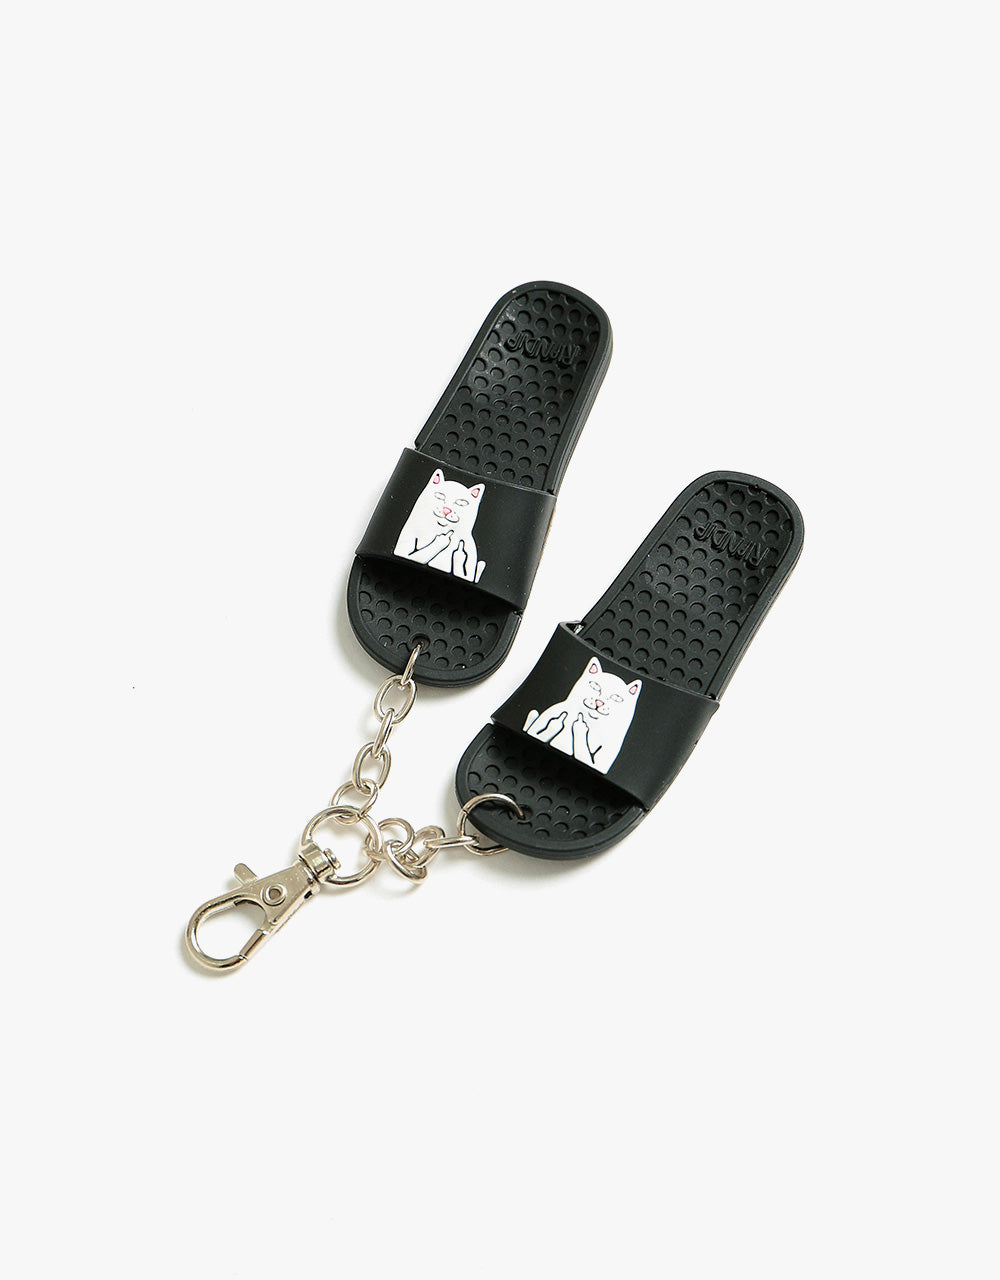 RIPNDIP Lord Nermal Mini Slides Key Chain - Black